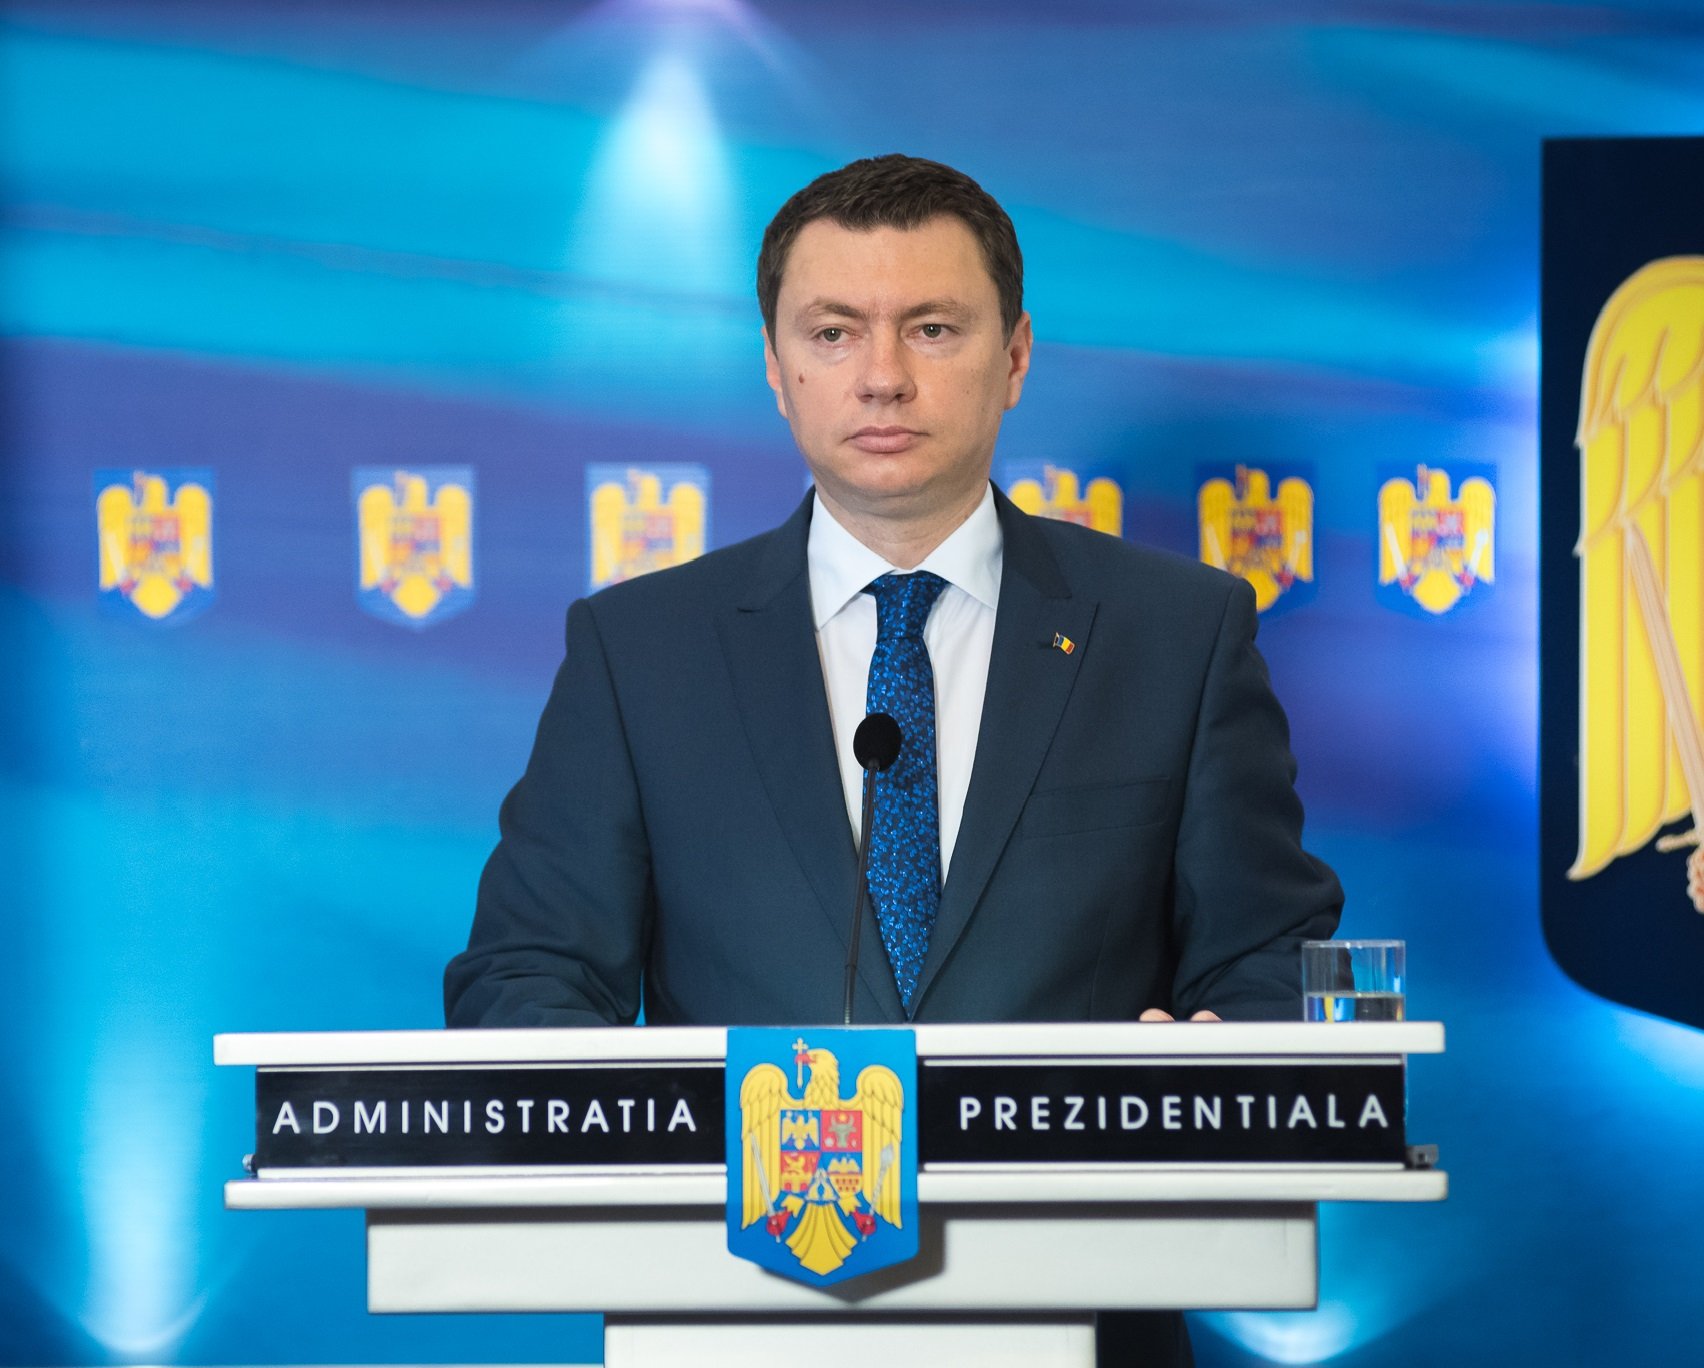  Consilierul prezidenţial Cosmin Marinescu avertizează că războiul va avea consecinţe economice grave